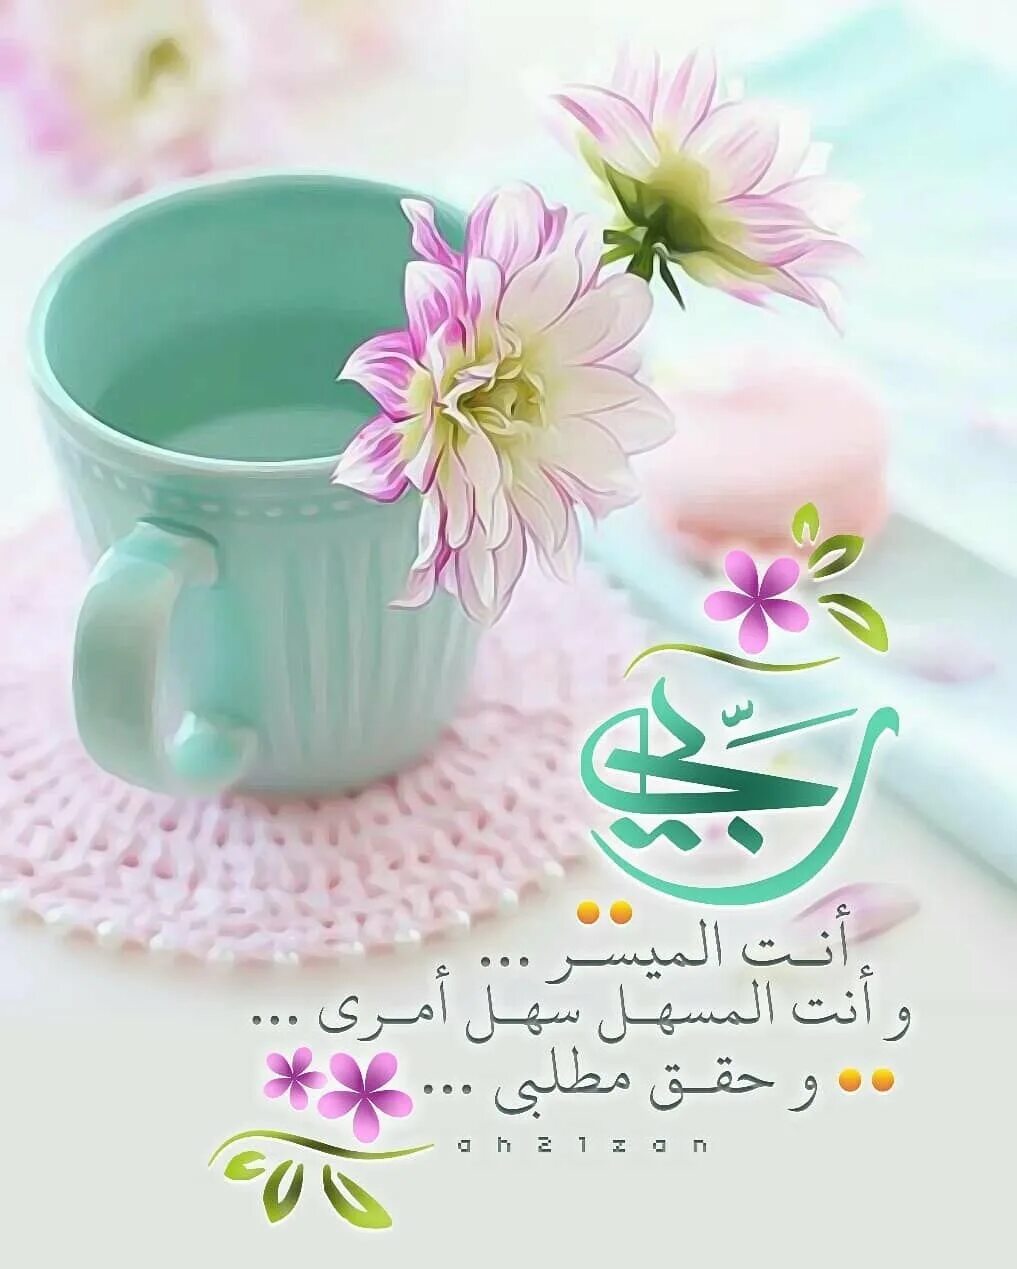 Мусульманские пожелания доброго. Мусульманские пожелания с добрым утром. Исламские пожелания доброго утра. Доброе утро мусульманские пожелания. Мусульманские поздравления с добрым утром!.